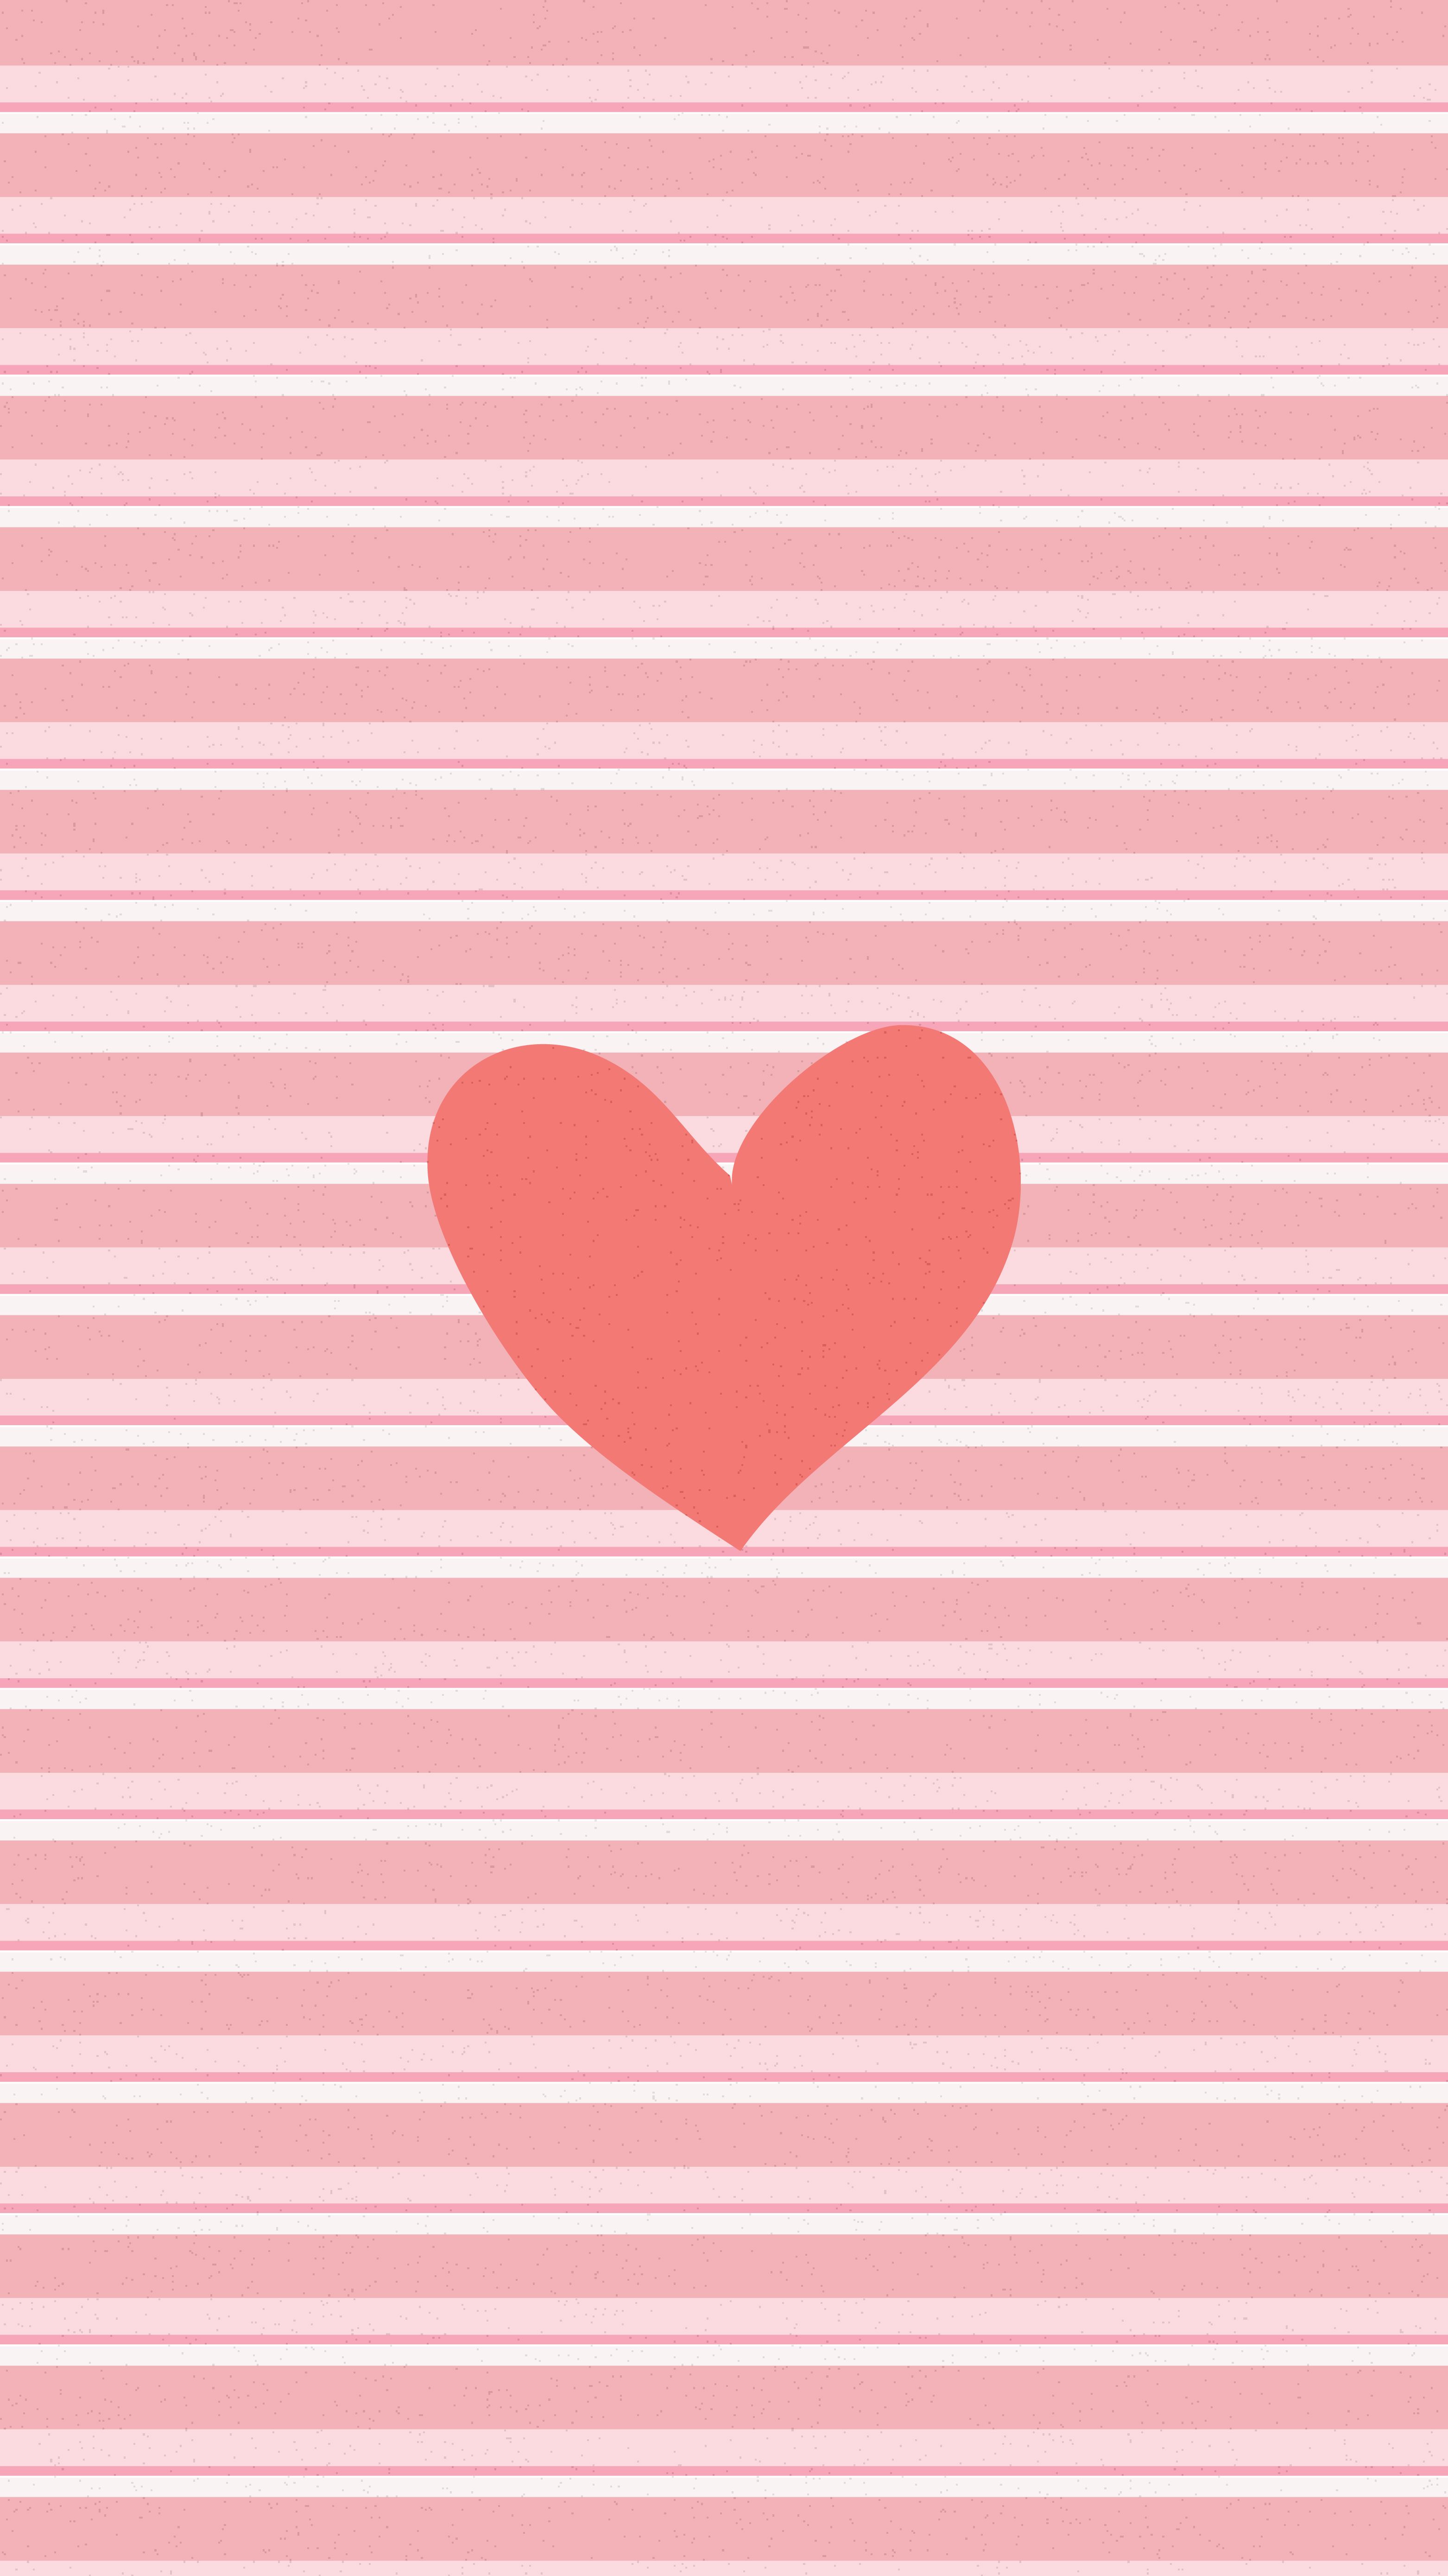 Valentine Pink iPhone Wallpaper Free Valentine Pink iPhone Background